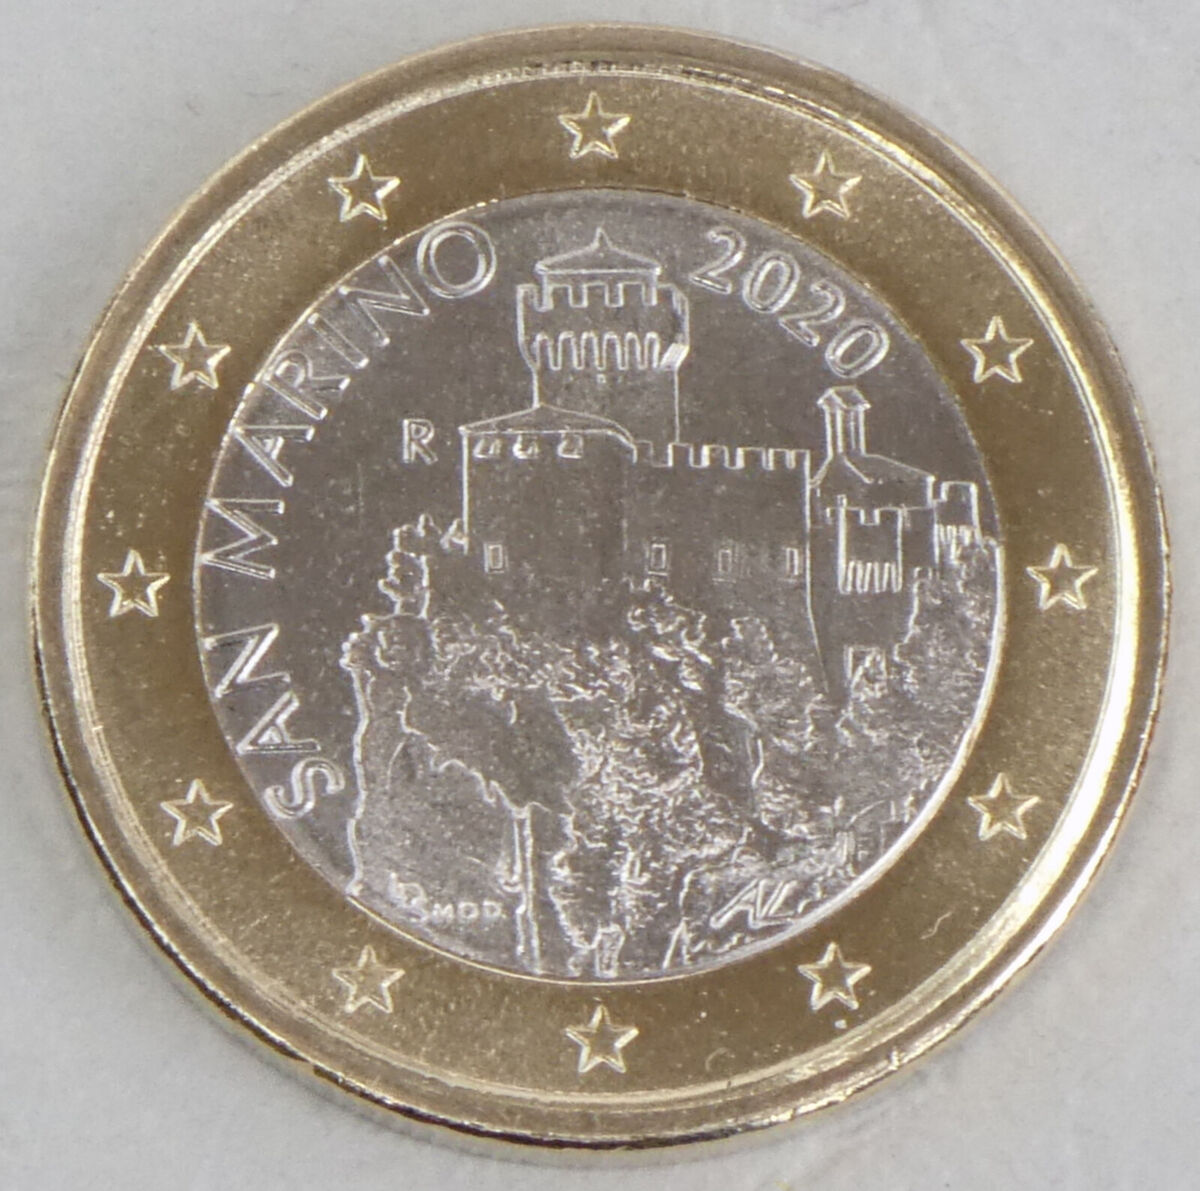 Currency of San Marino - Wikipedia